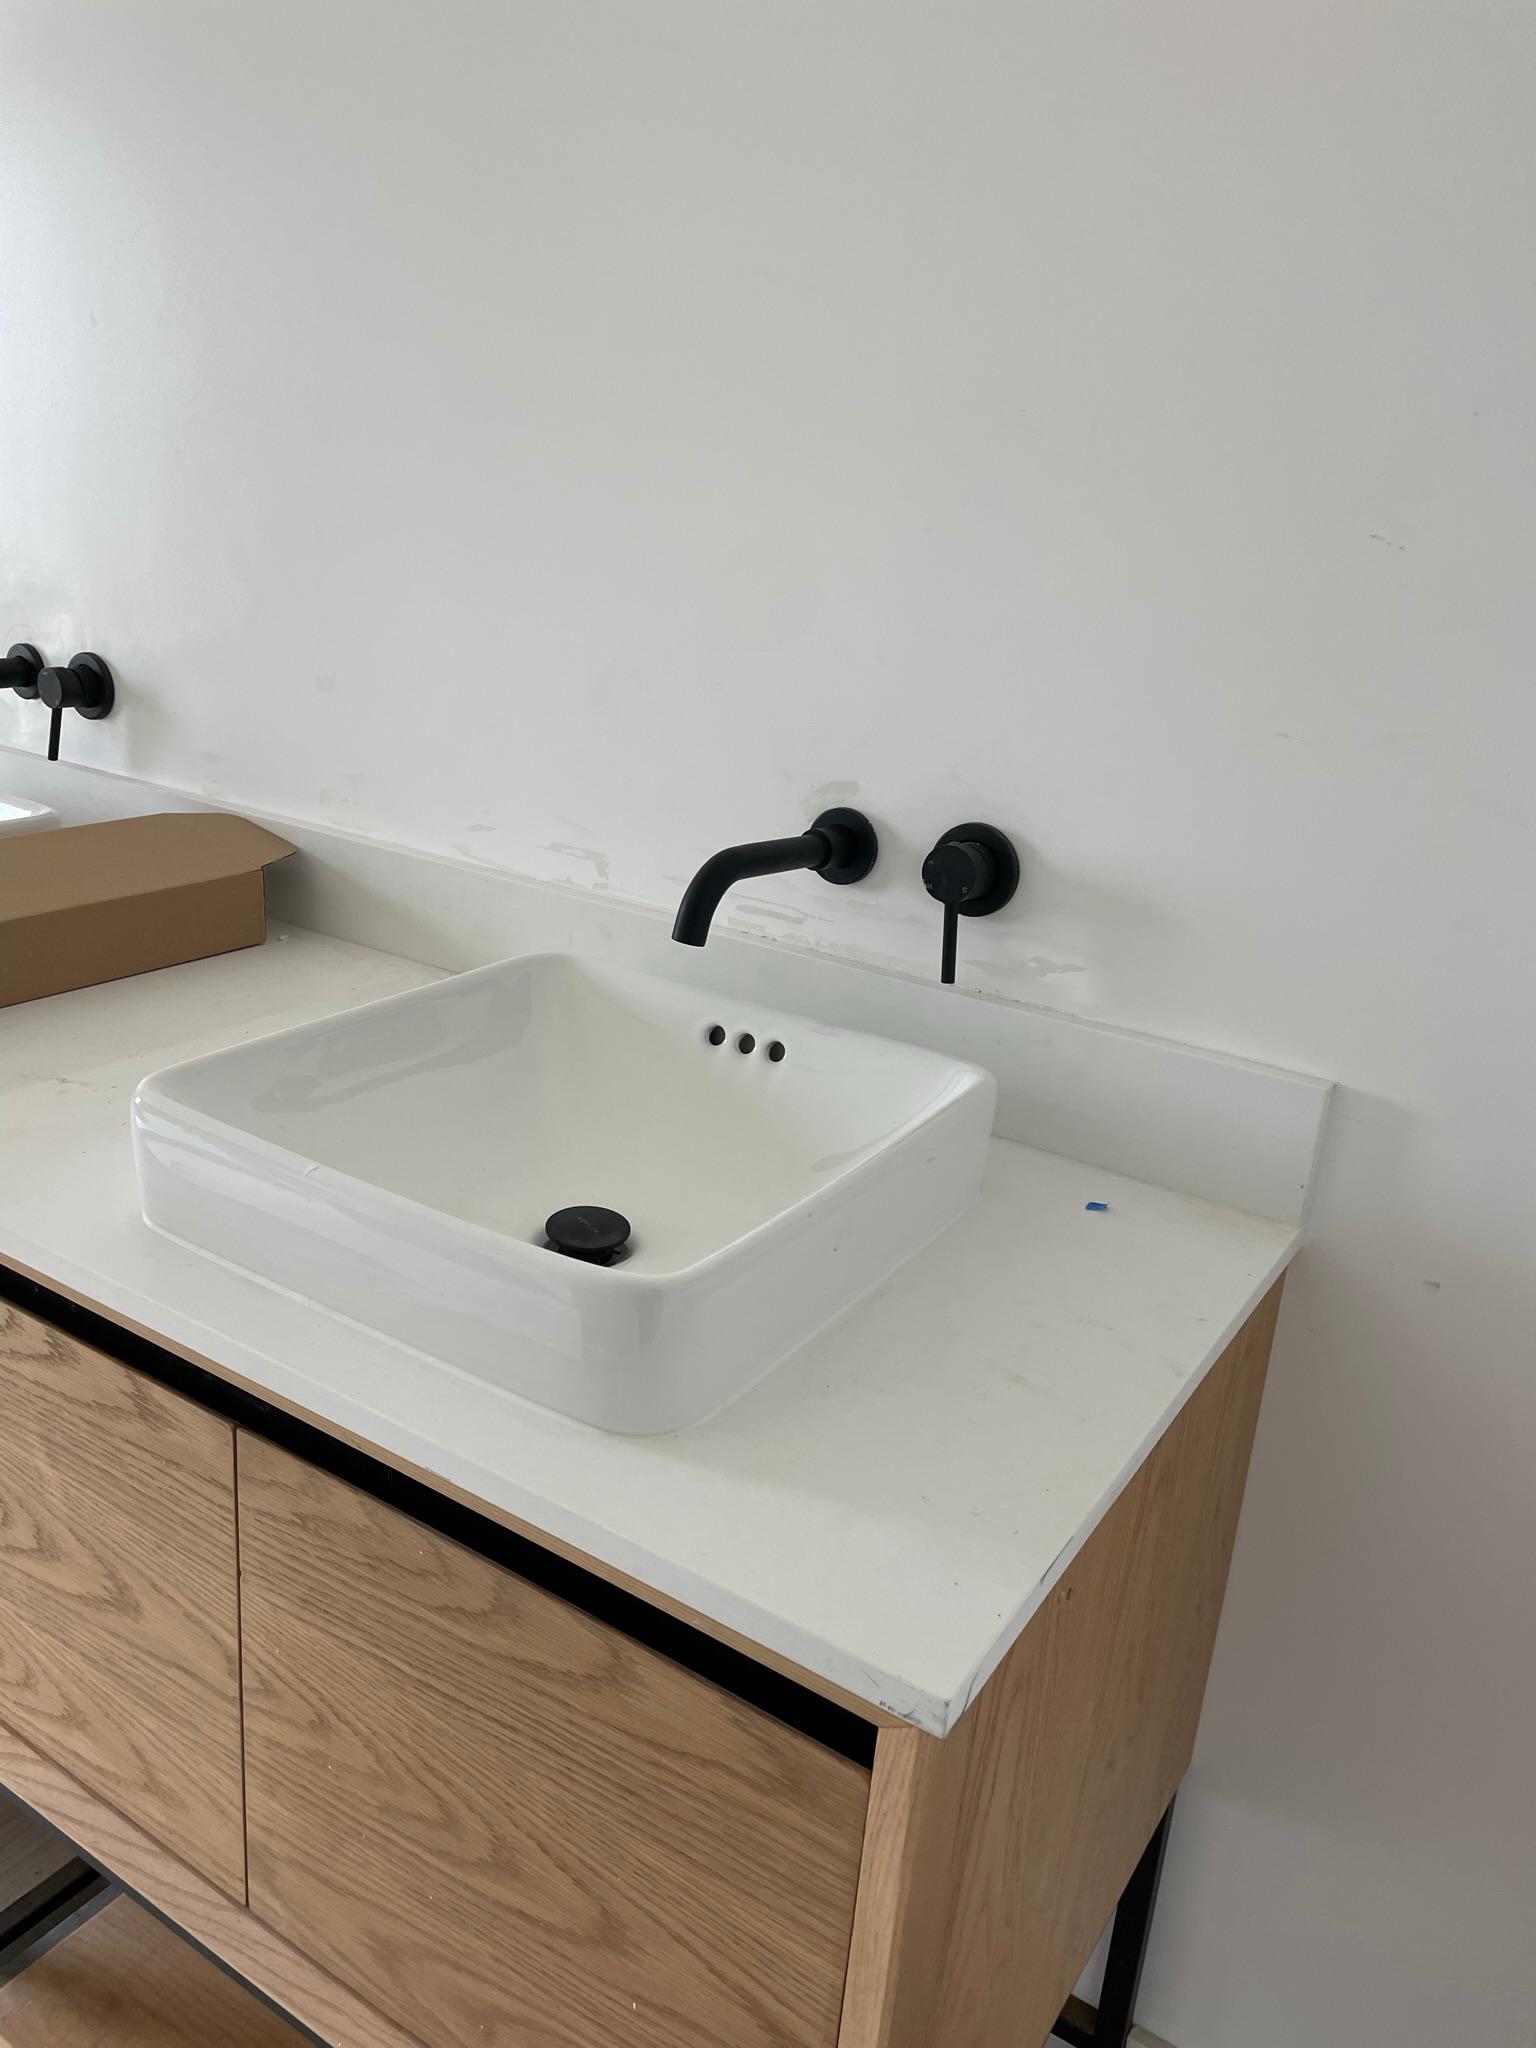 Torres Plumbing - New sink faucet installation